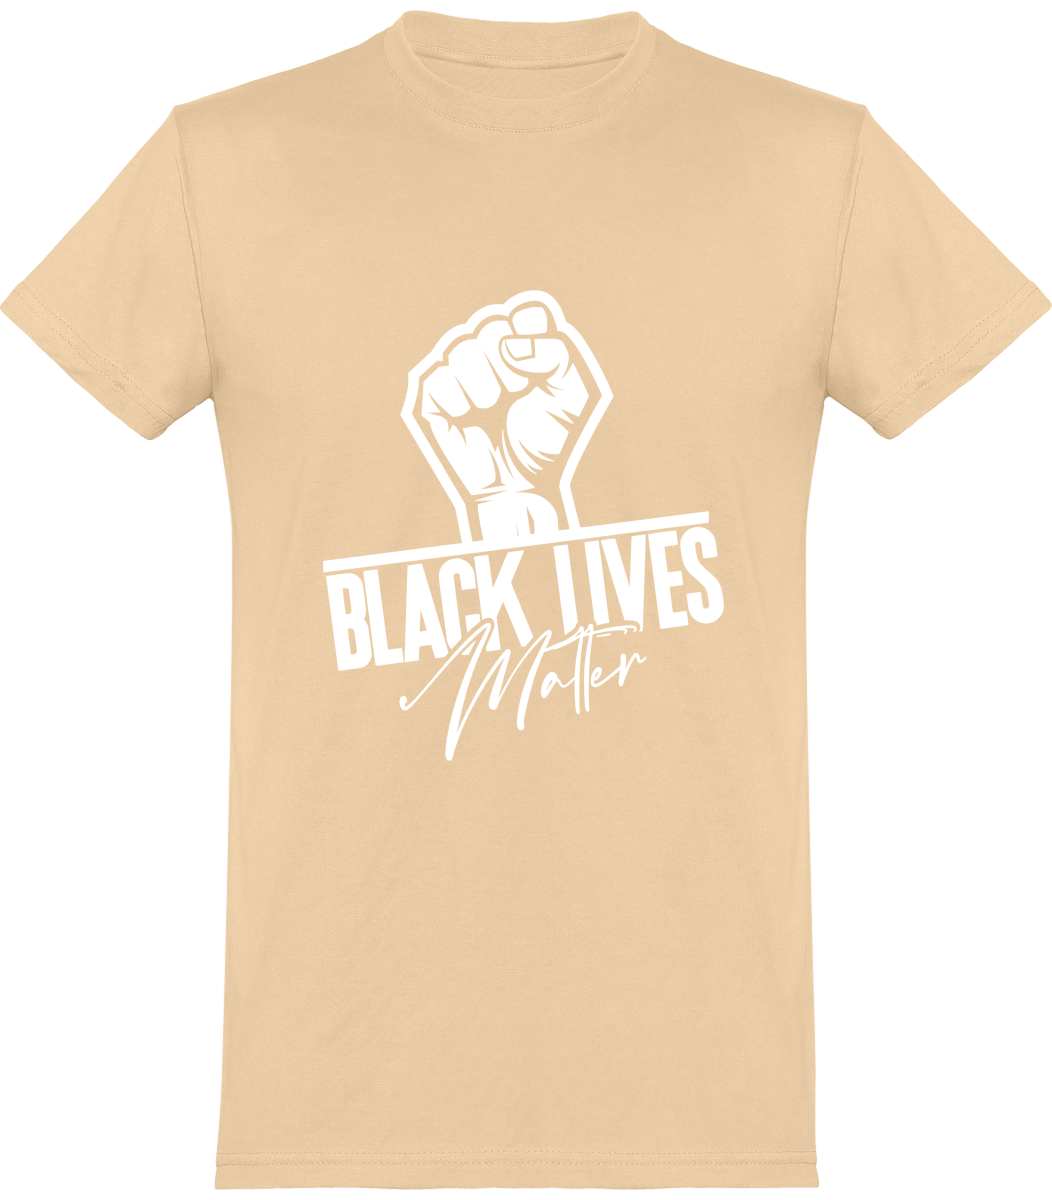 Tee Shirt Black Lives Matter